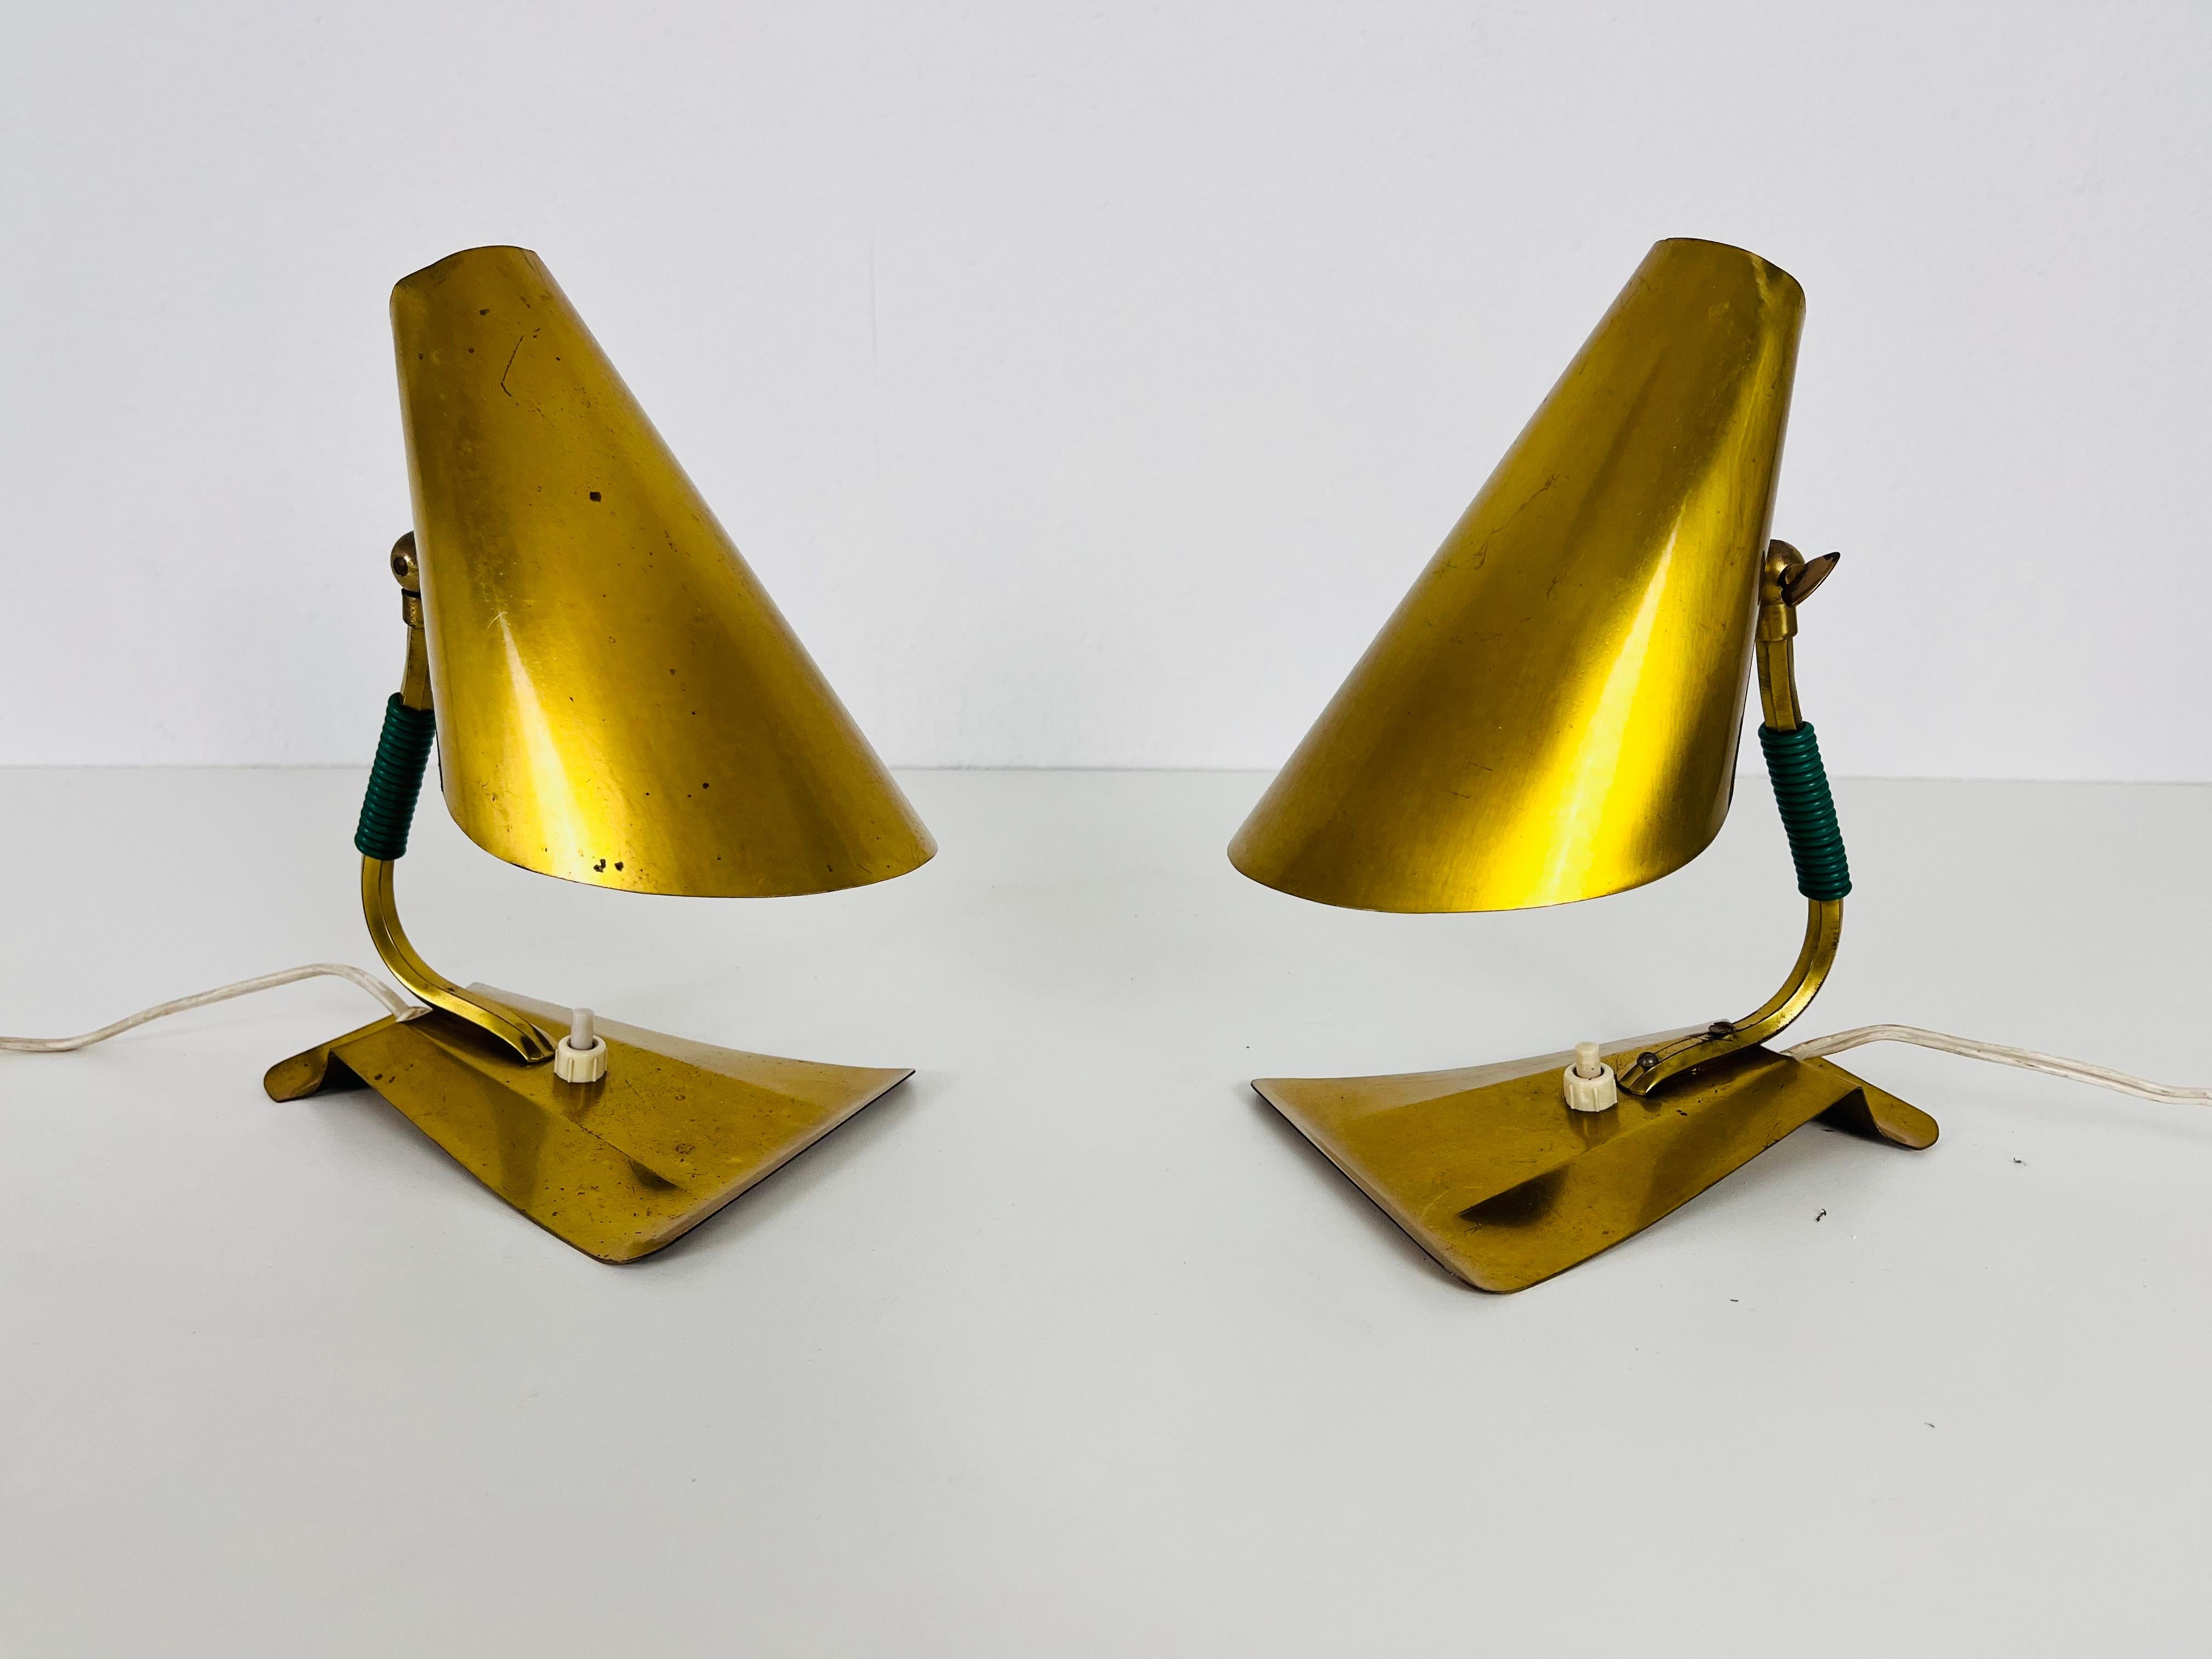 Ein schönes Paar Stilnovo-Tischlampen, hergestellt in Italien in den 1960er Jahren. Er fasziniert durch seine außergewöhnliche Basis. Die Tischlampen sind aus poliertem Messing gefertigt und können auch als Wandlampen verwendet werden.

Guter